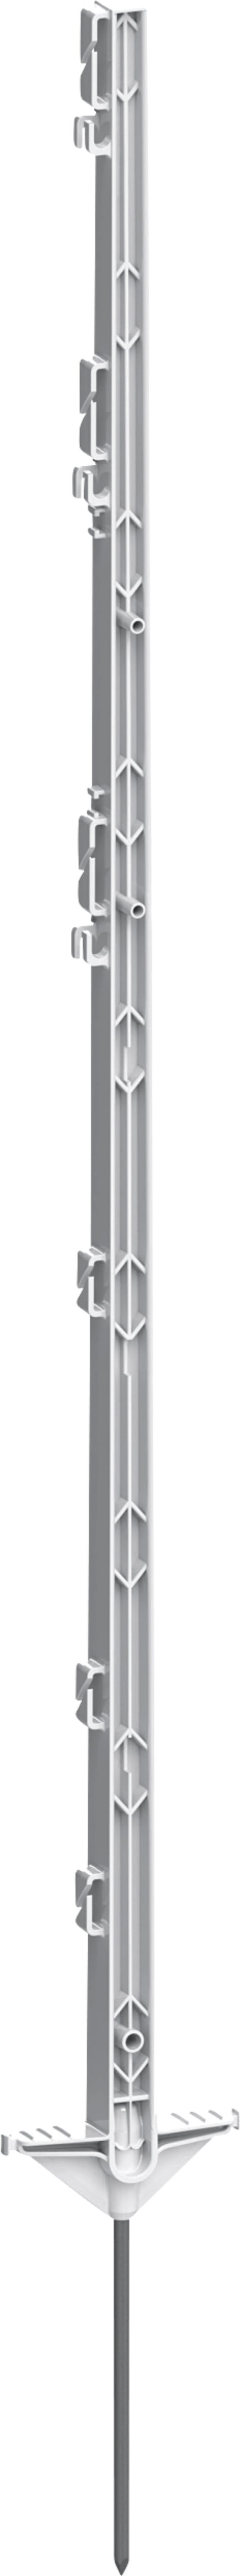 AKO Kunststoffpfahl Classic mit Stahlspaner, Doppeltritt 125 cm, weiß 5 Stk.